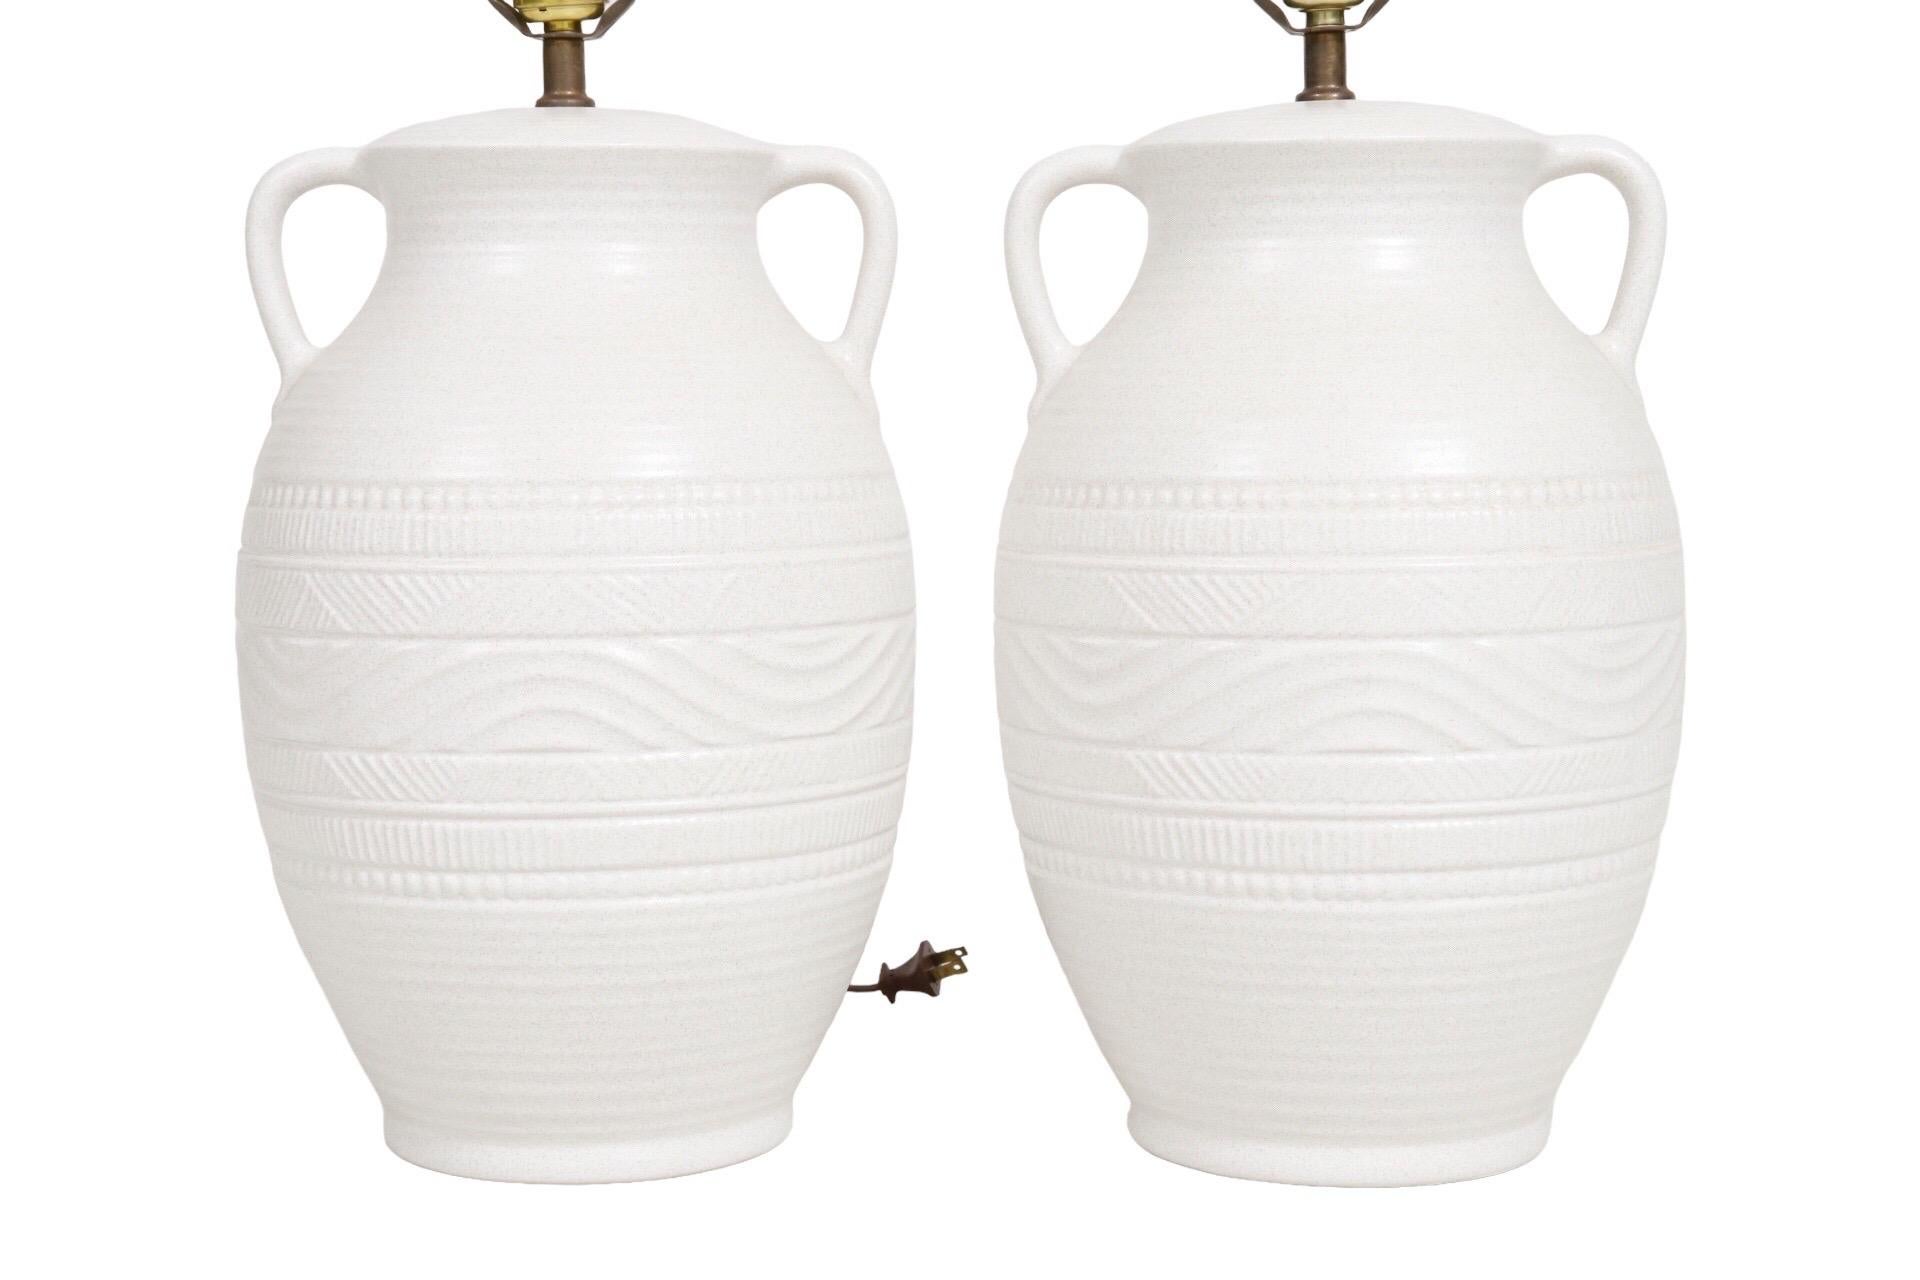 Paire de lampes de table en forme d'Amphora en céramique blanche. Deux petites poignées se trouvent au niveau du col. Les vases sont pressés avec des vagues ondulantes et des lignes géométriques. Chaque lampe mesure 9,5